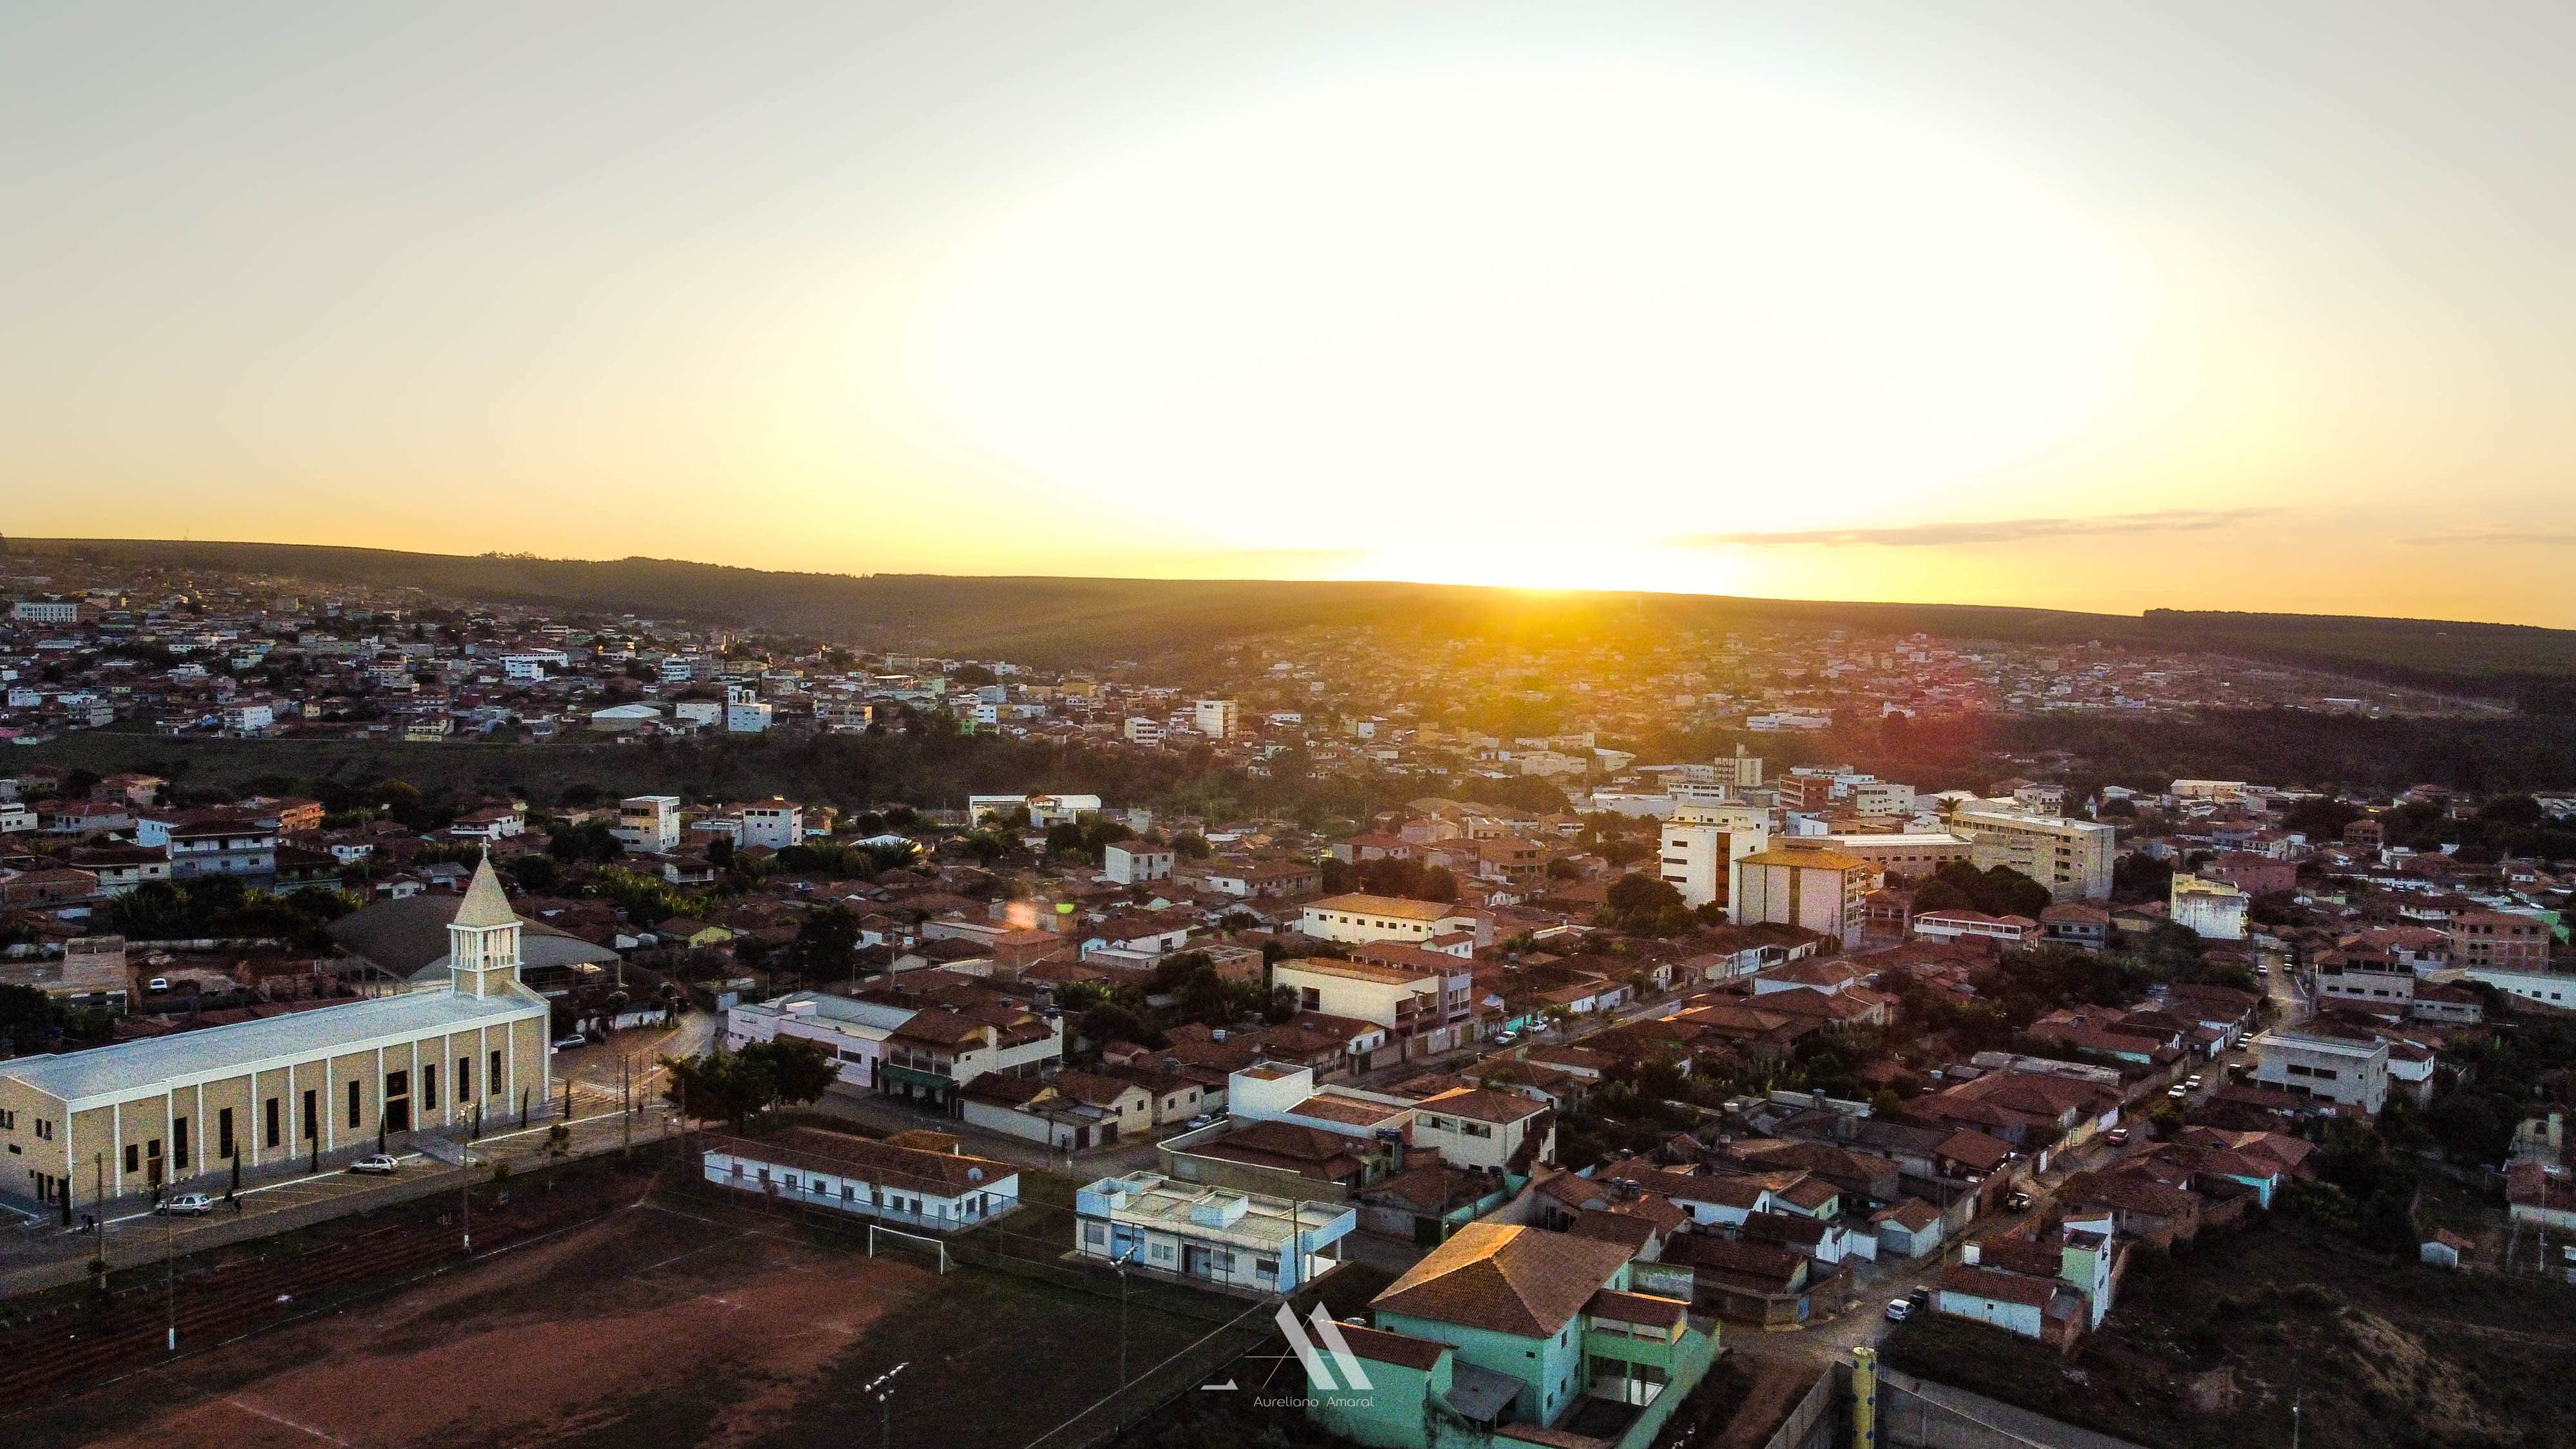 ITAMARANDIBA – A CAPITAL NACIONAL DO EUCALIPTO